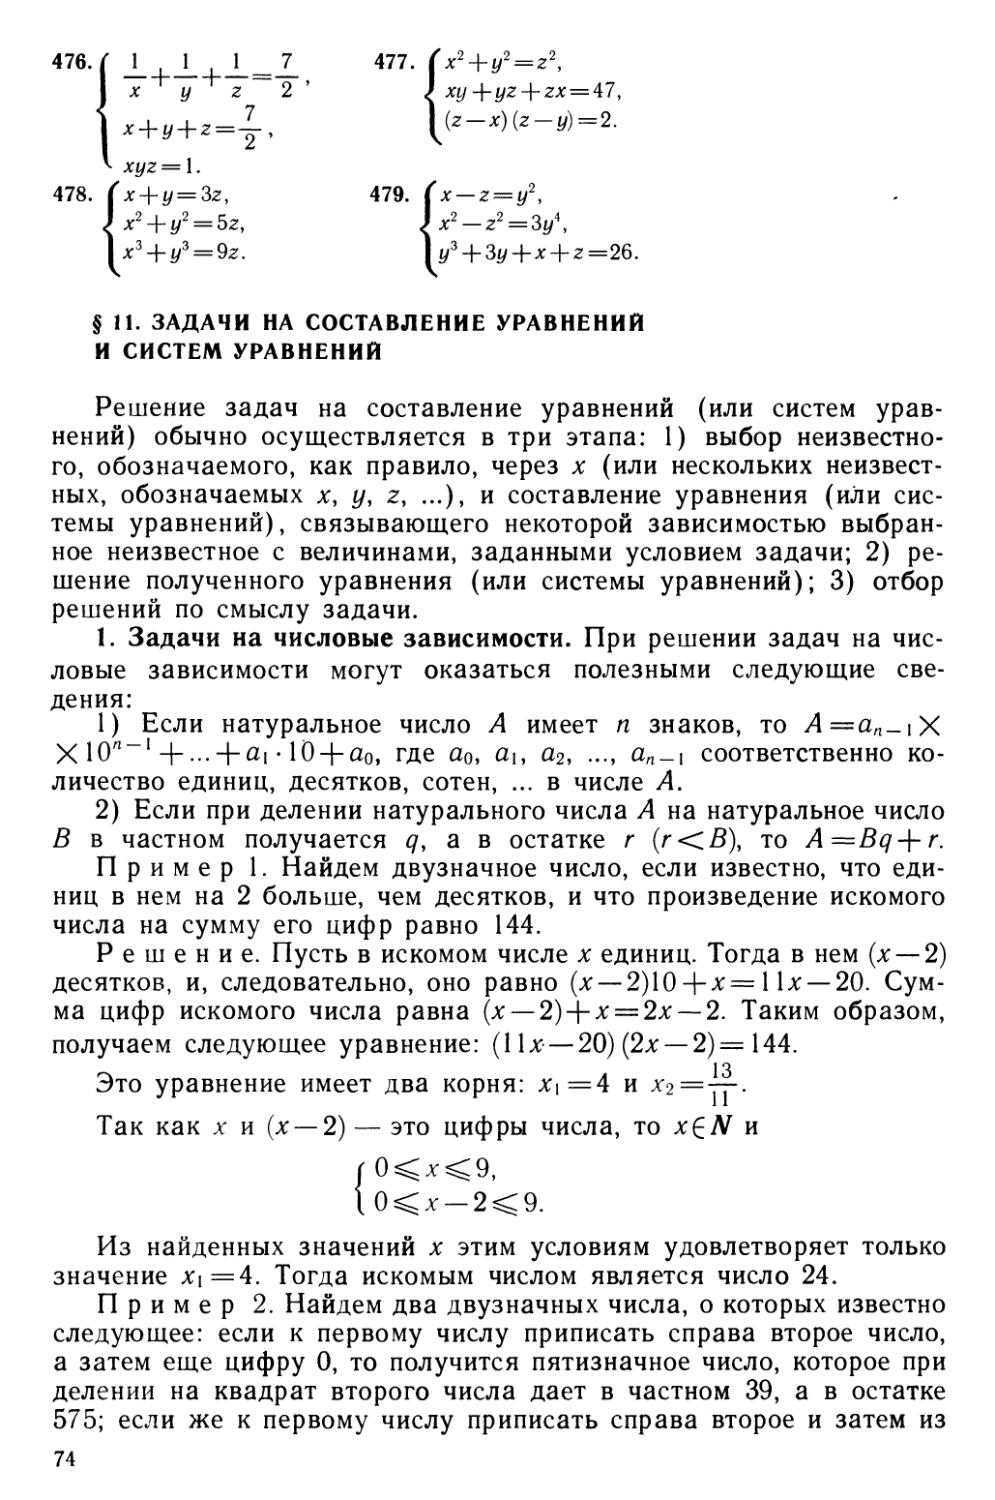 § 11 Задачи на составление уравнений и систем уравнений